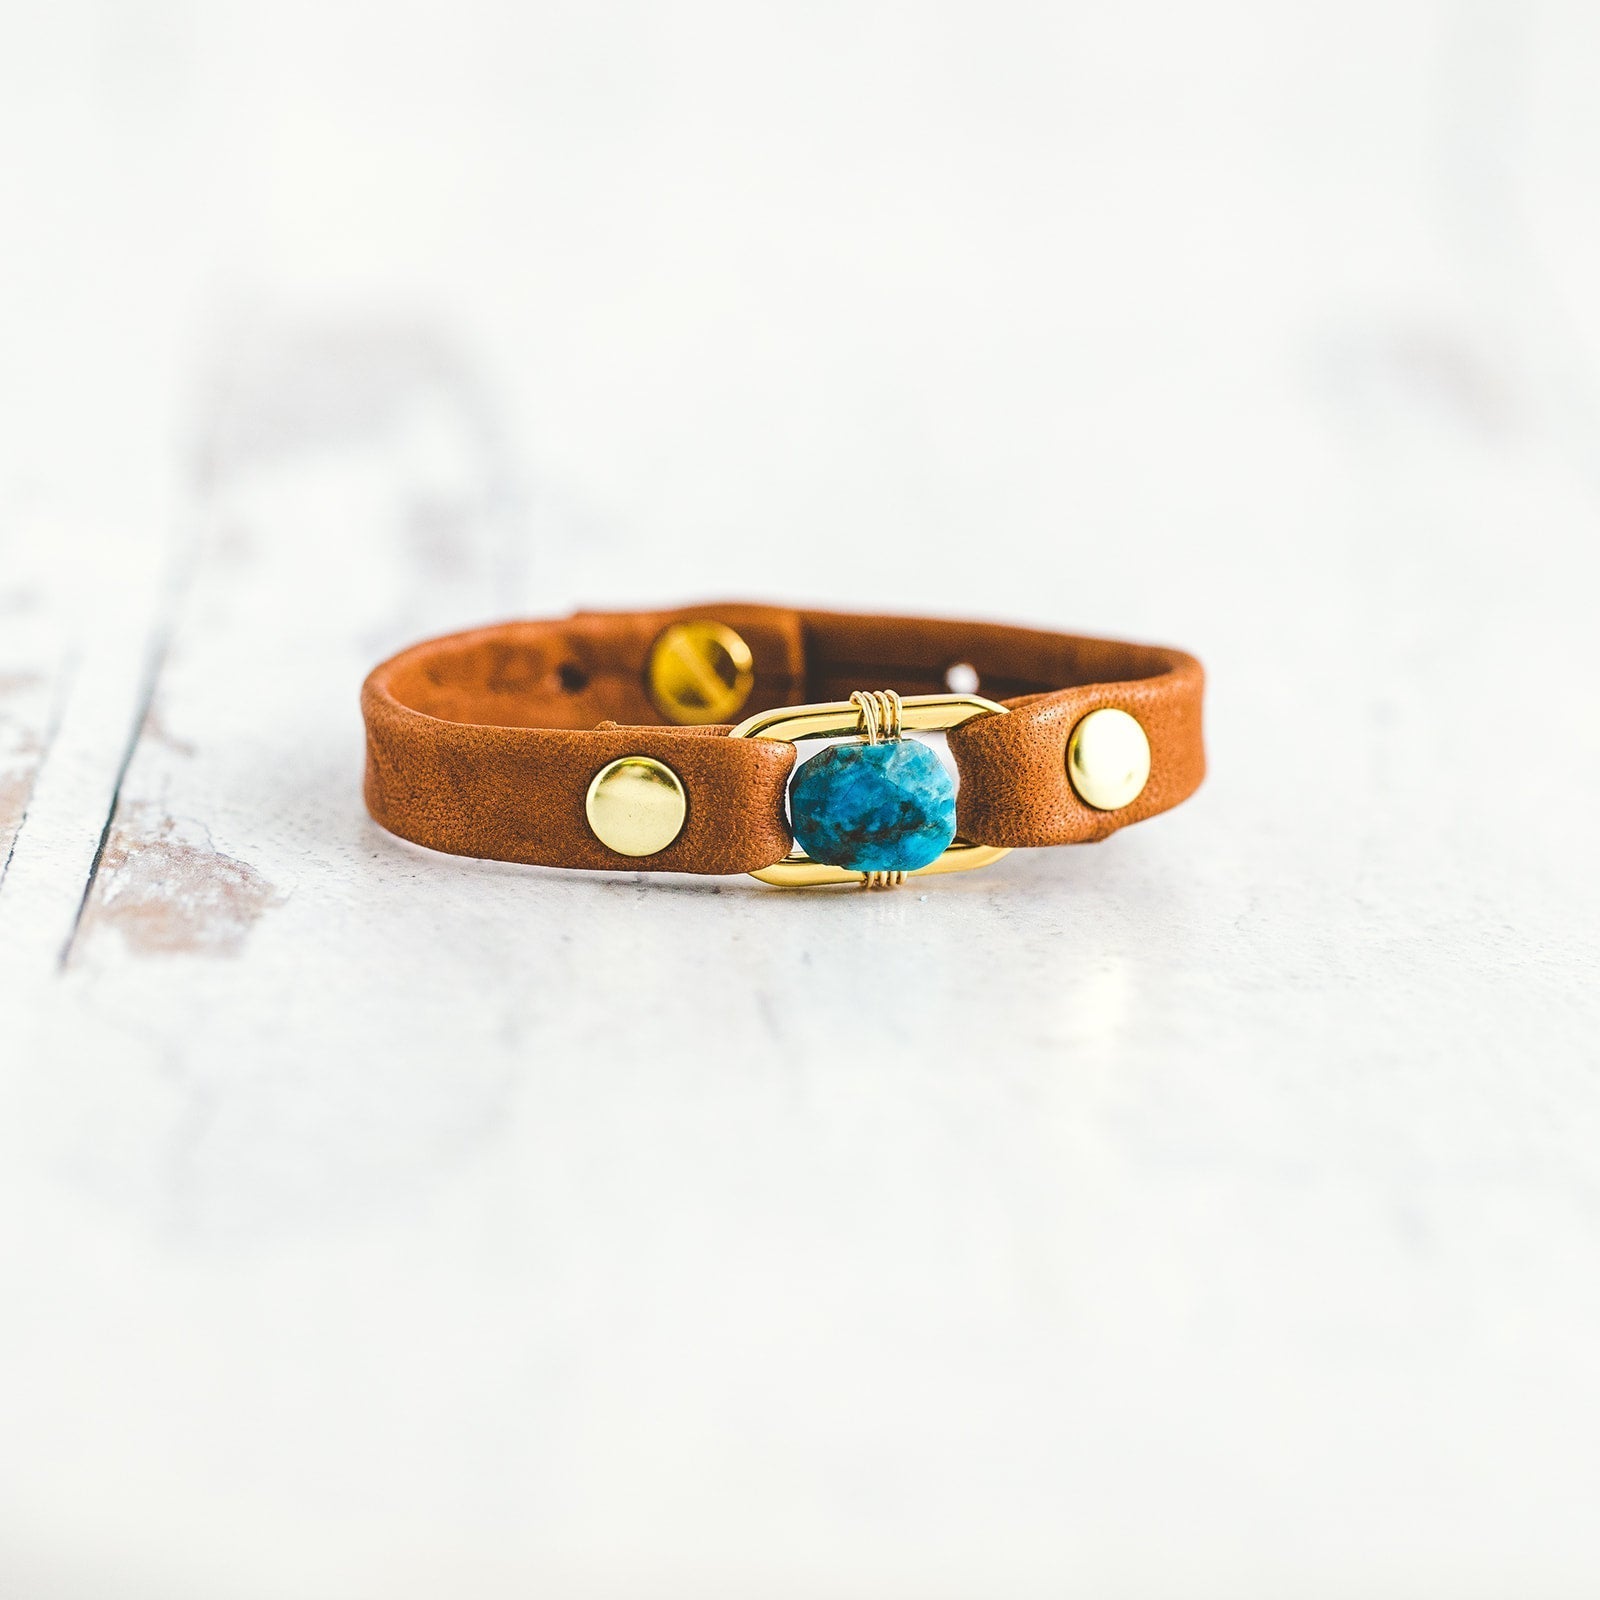 January - Workshop: Make Your Own Giving Bracelet